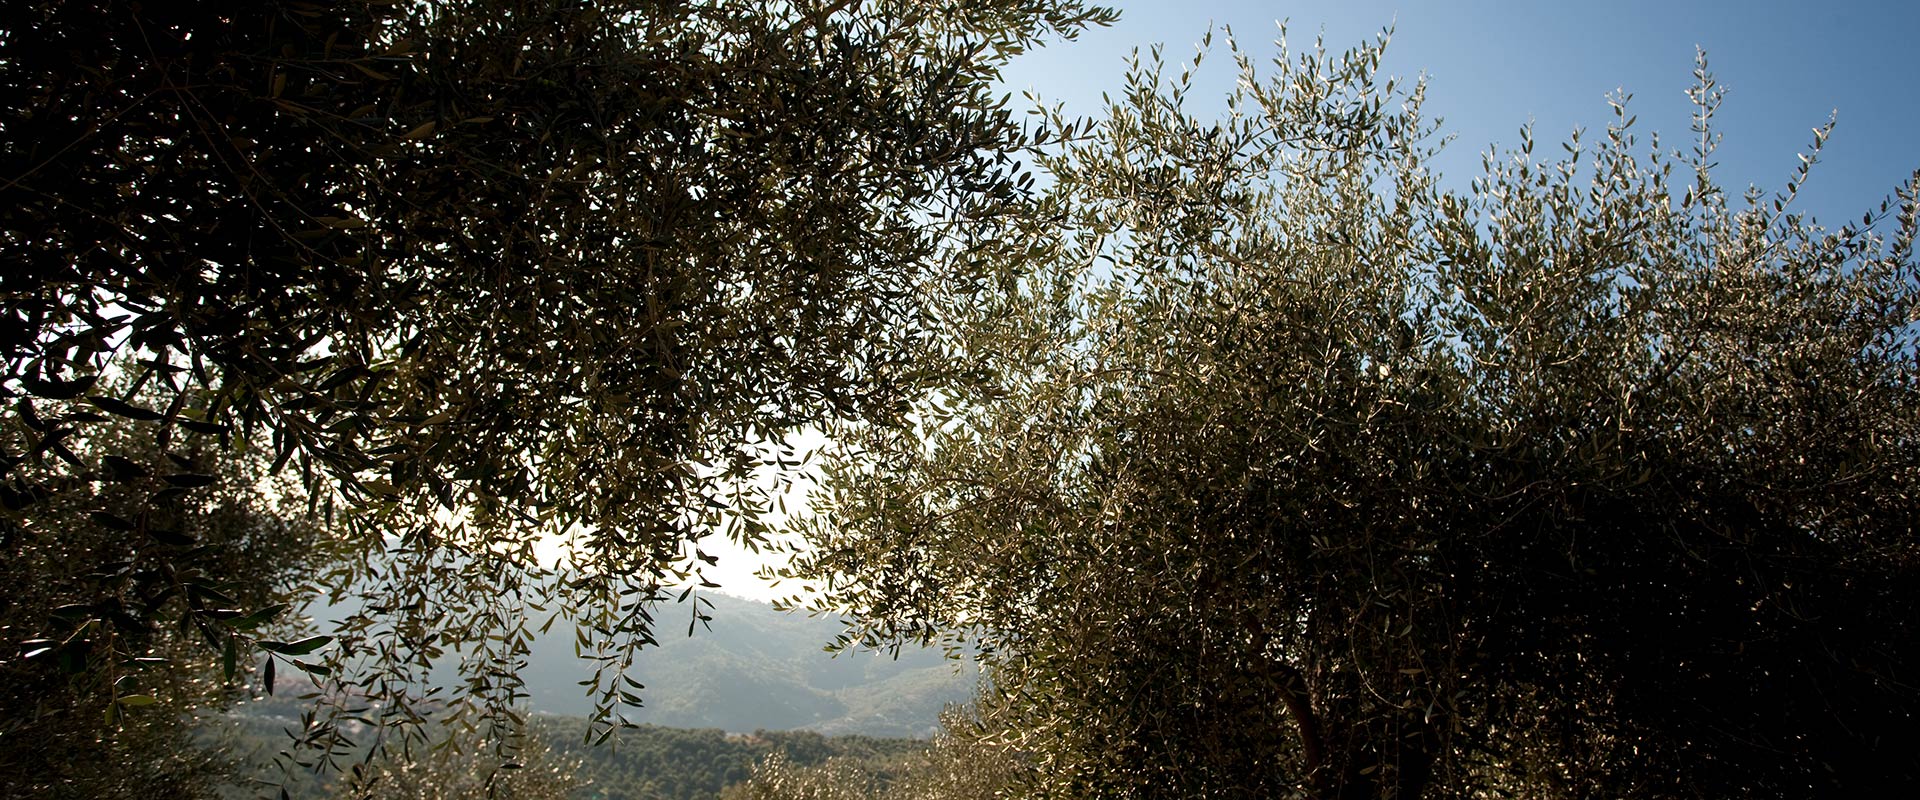 Eventi d'autunno: una camminata tra gli olivi